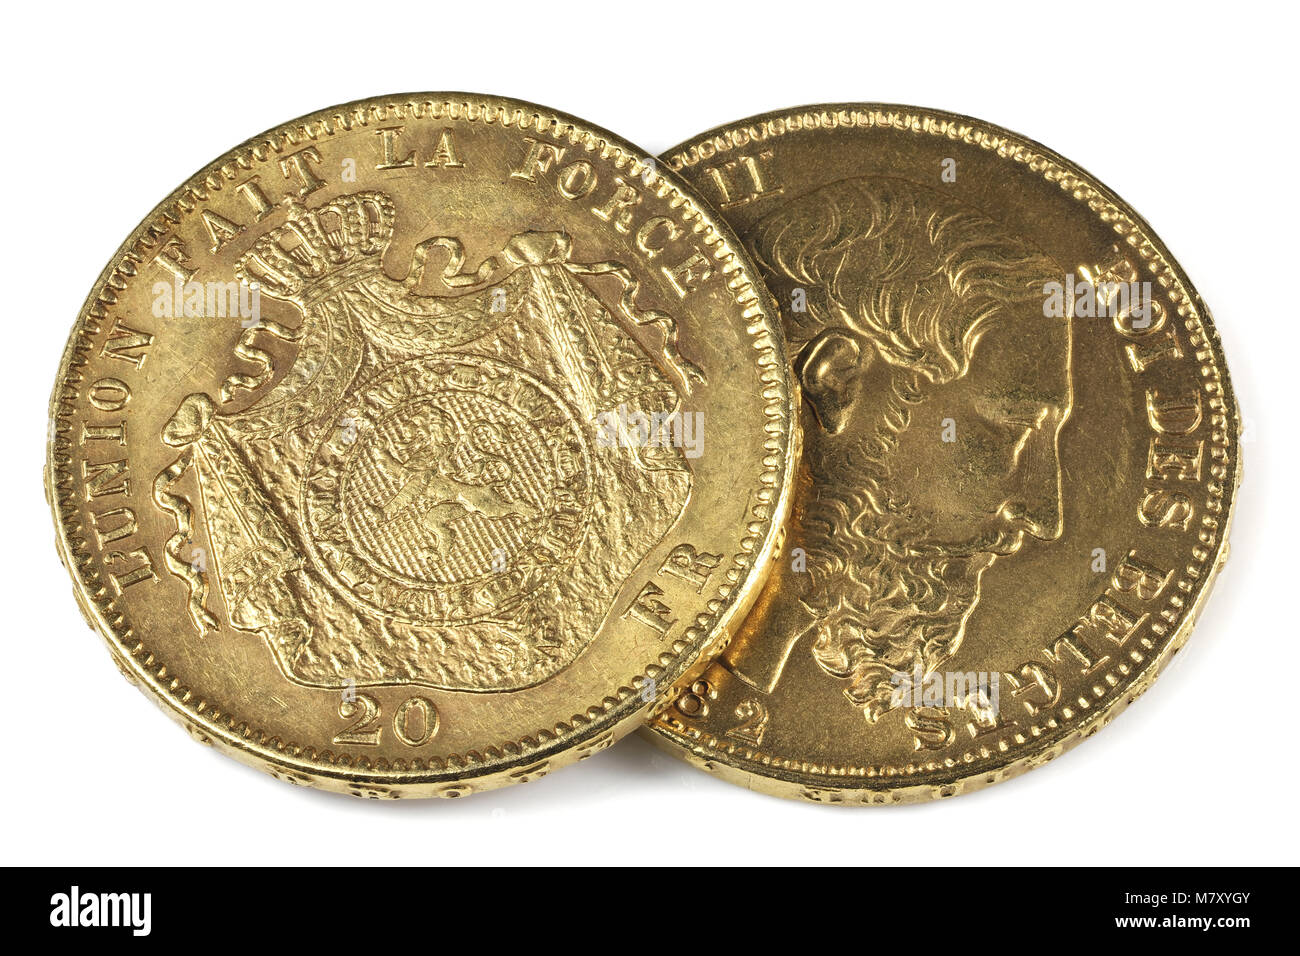 Pièces d'or de 20 Francs belge isolé sur fond blanc Banque D'Images